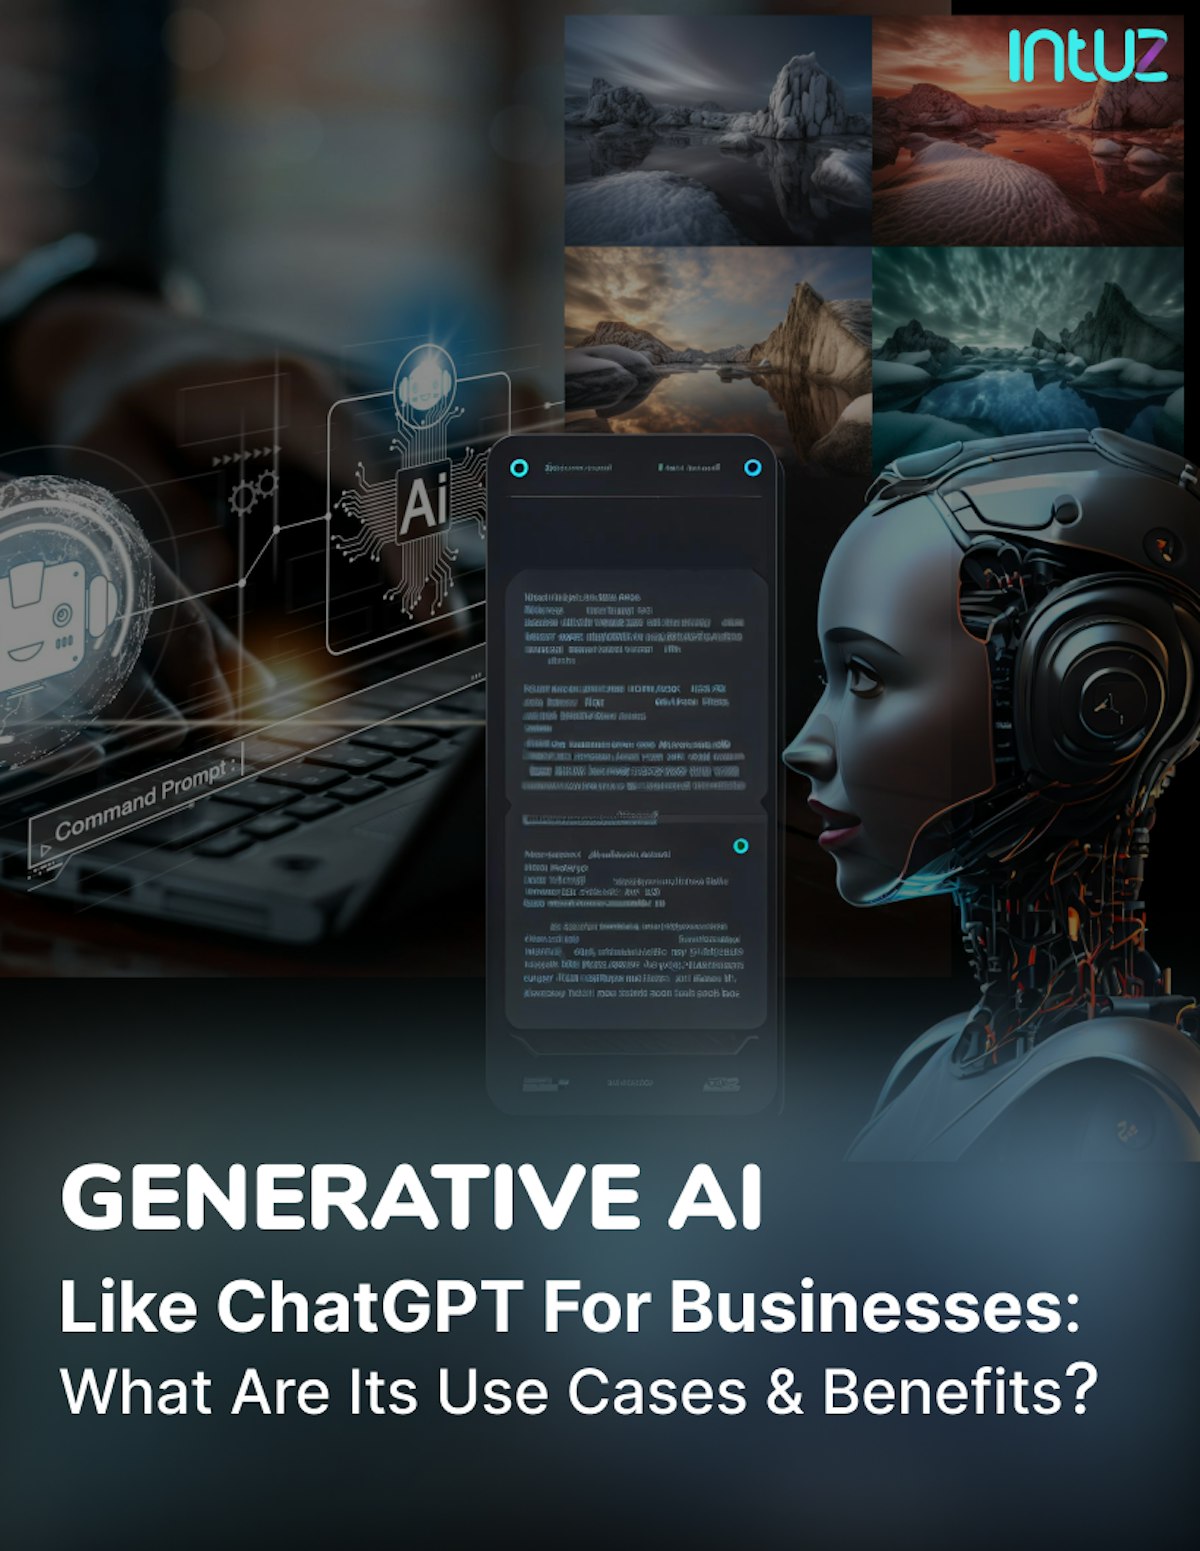 Generative AI - Intuz